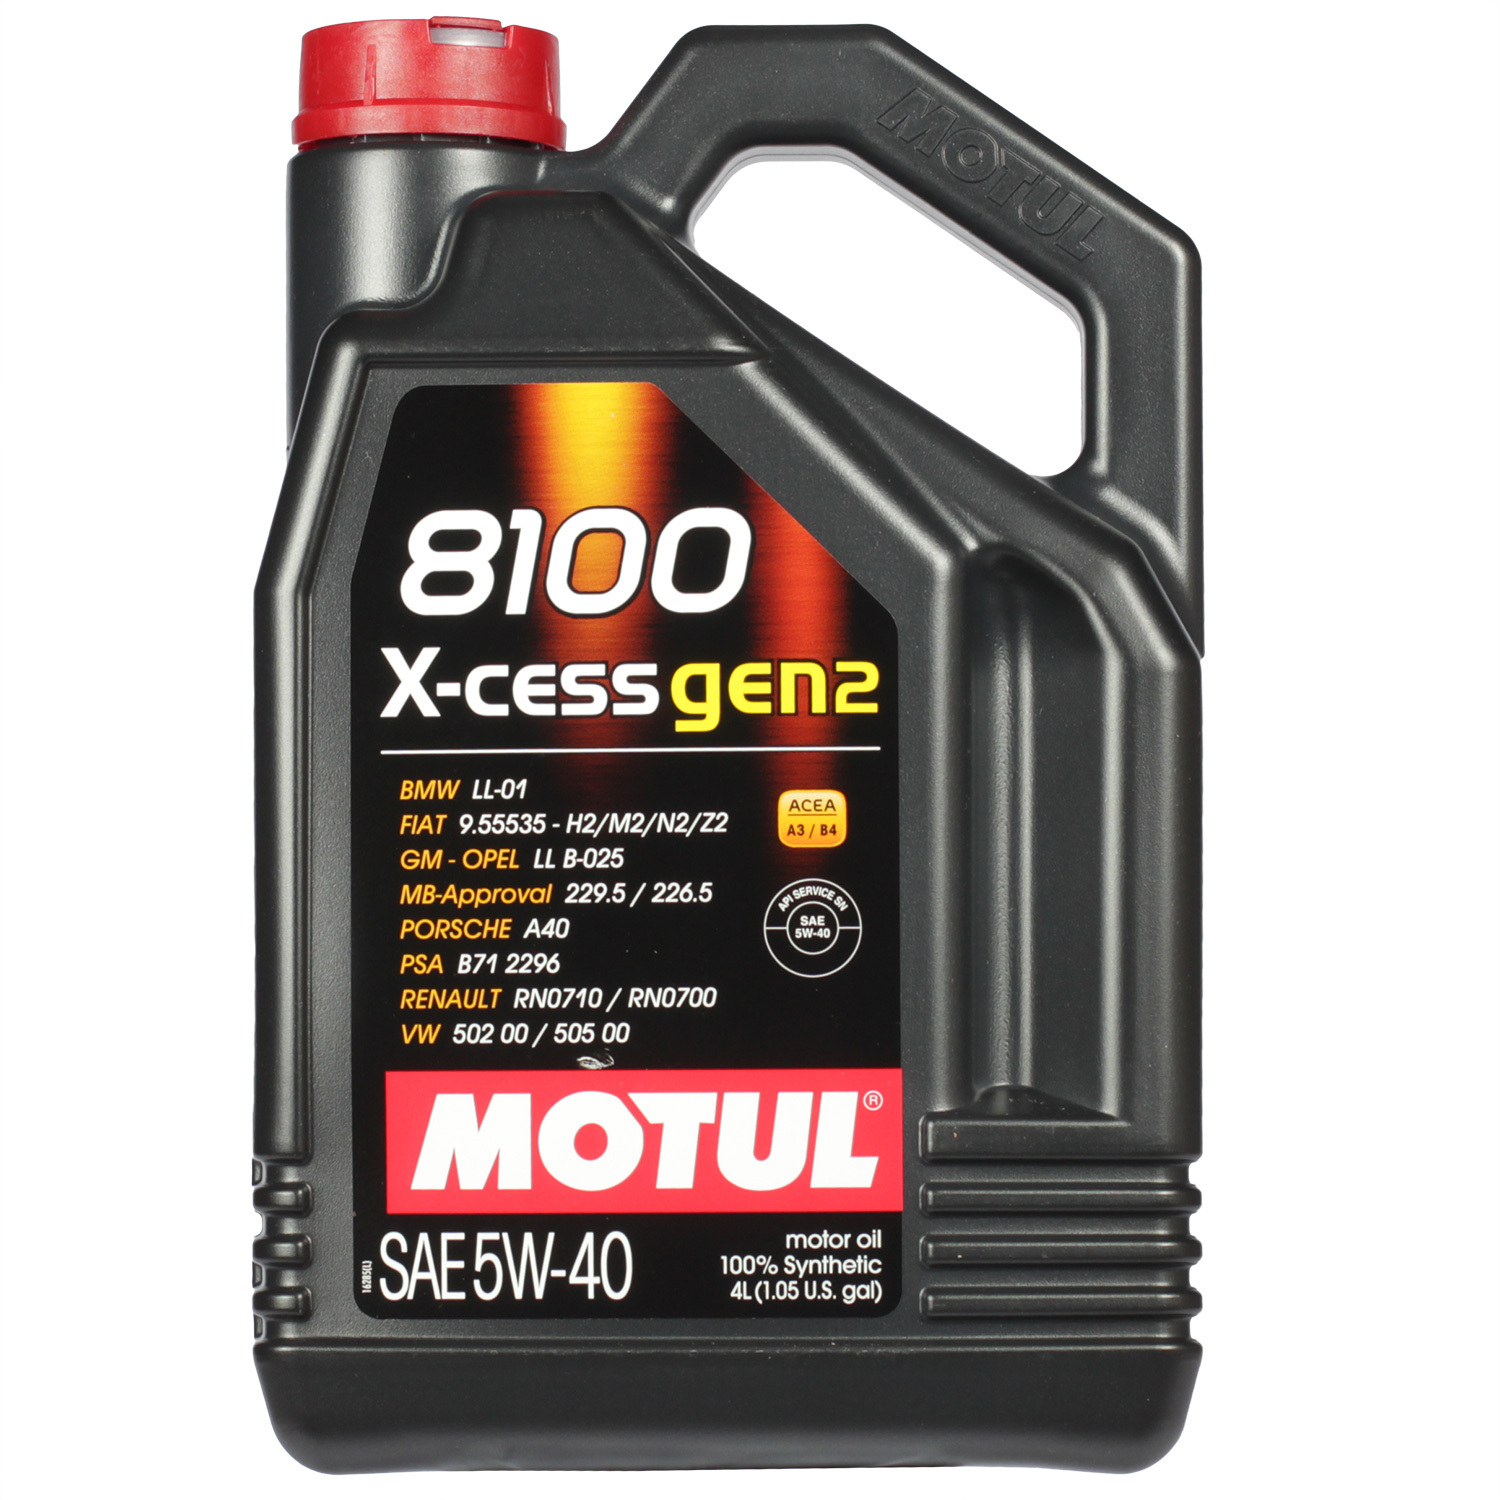 Motul Моторное масло Motul 8100 X-cess gen2 5W-40, 4 л motul моторное масло motul 8100 eco nergy 5w 30 1 л